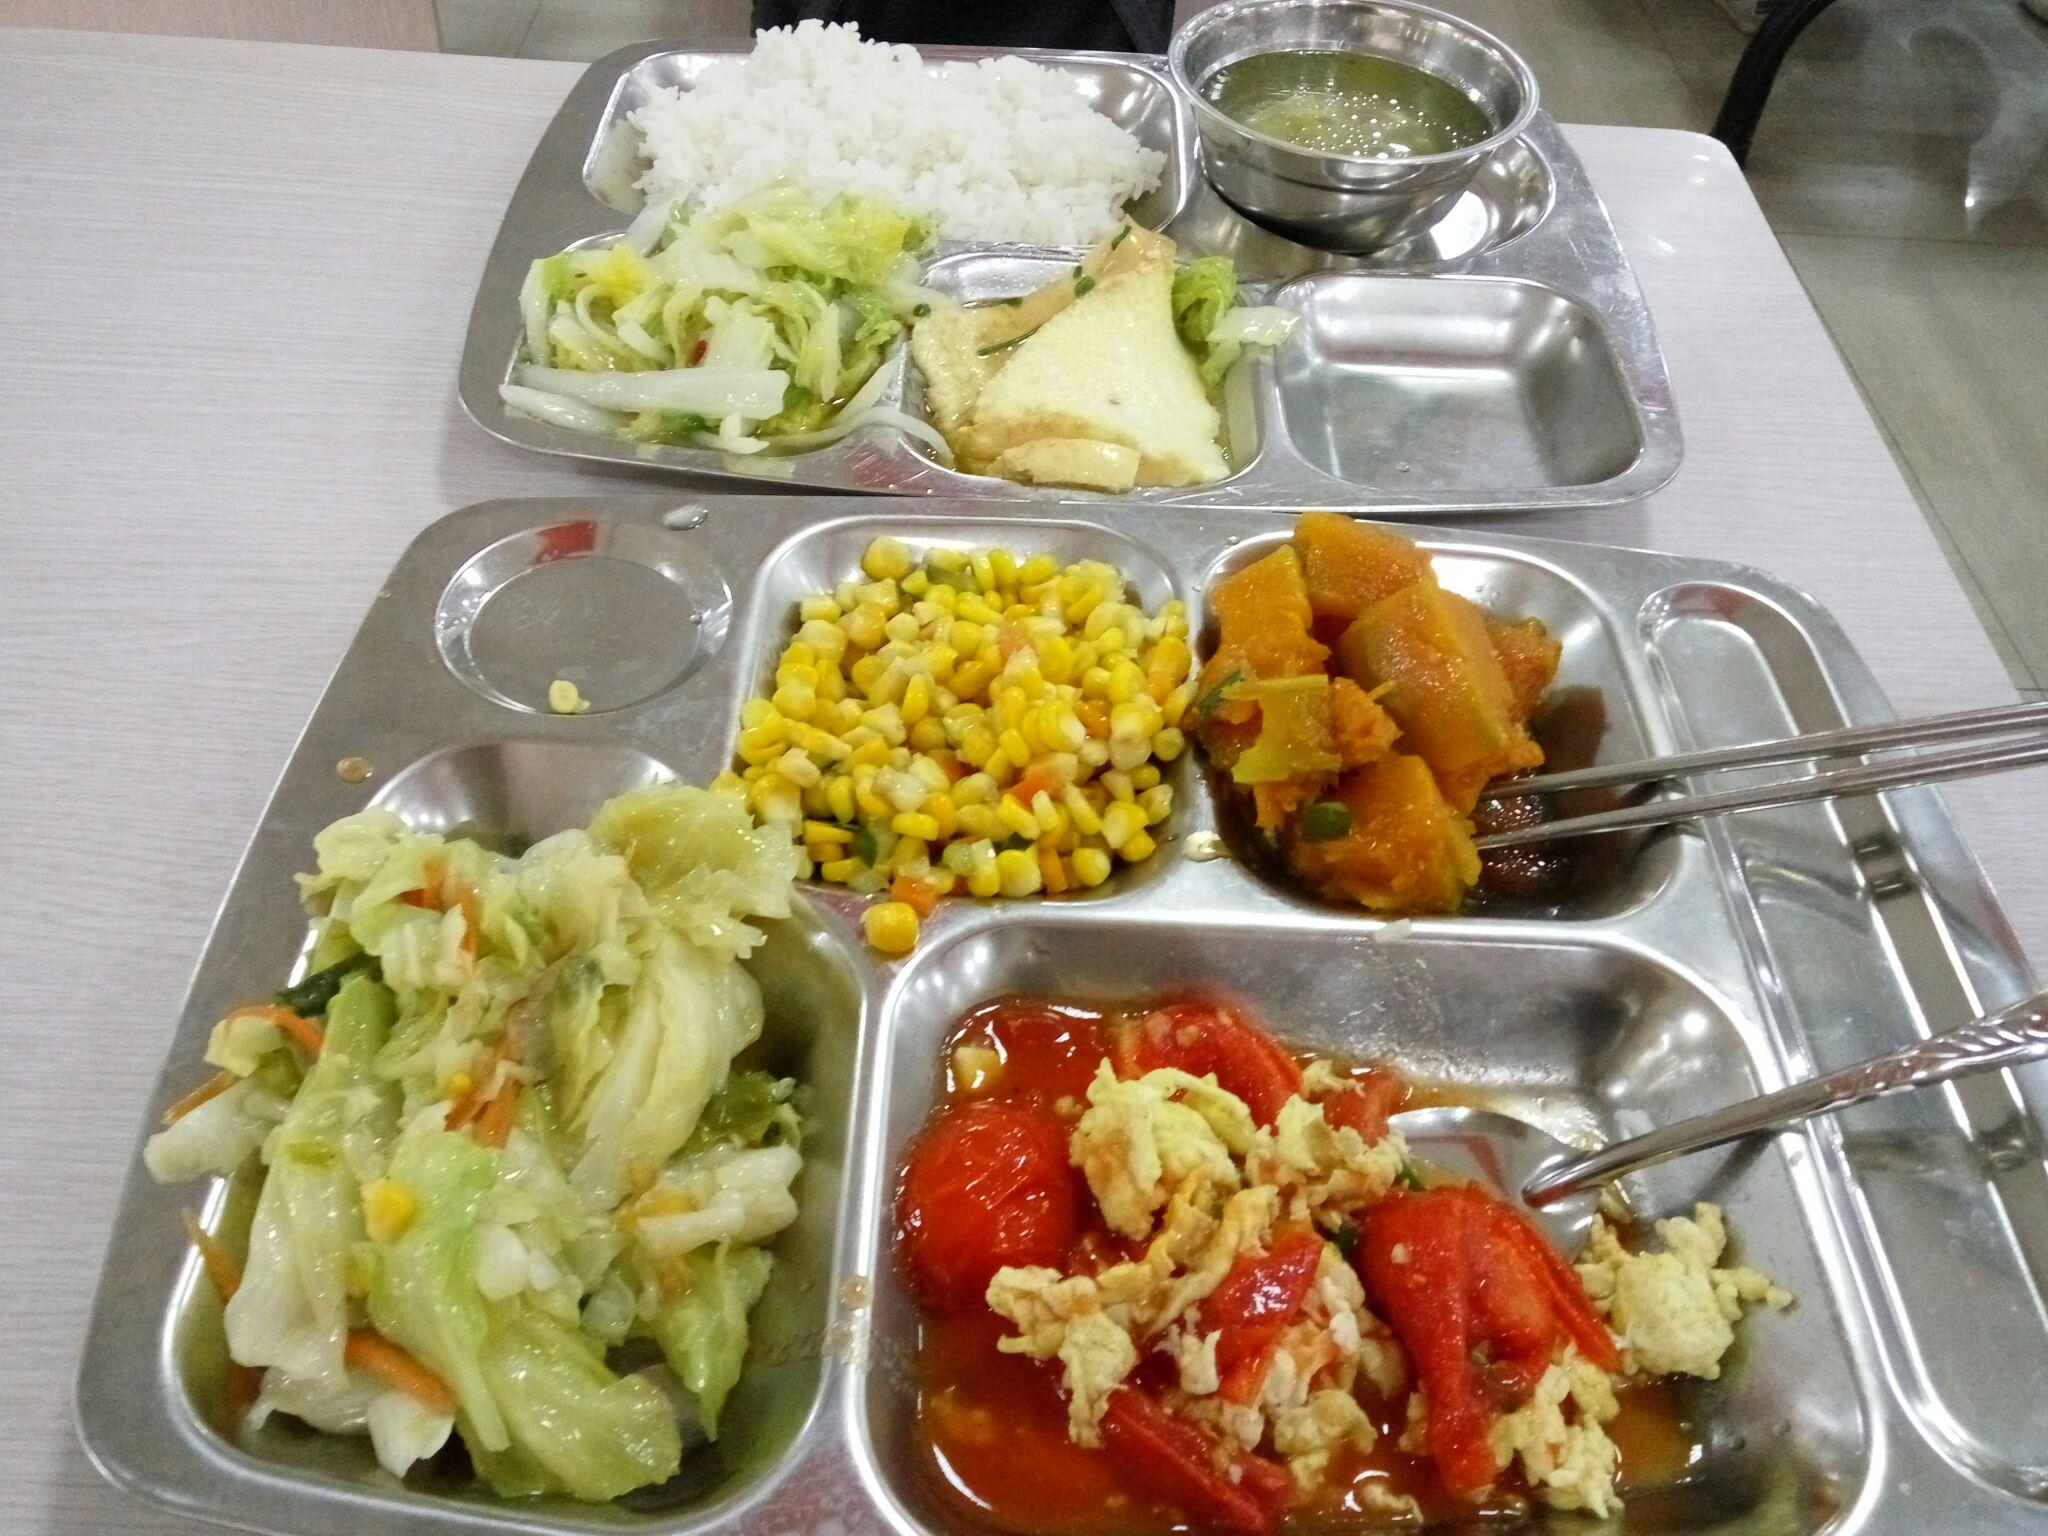 学校食堂饭菜照片图片